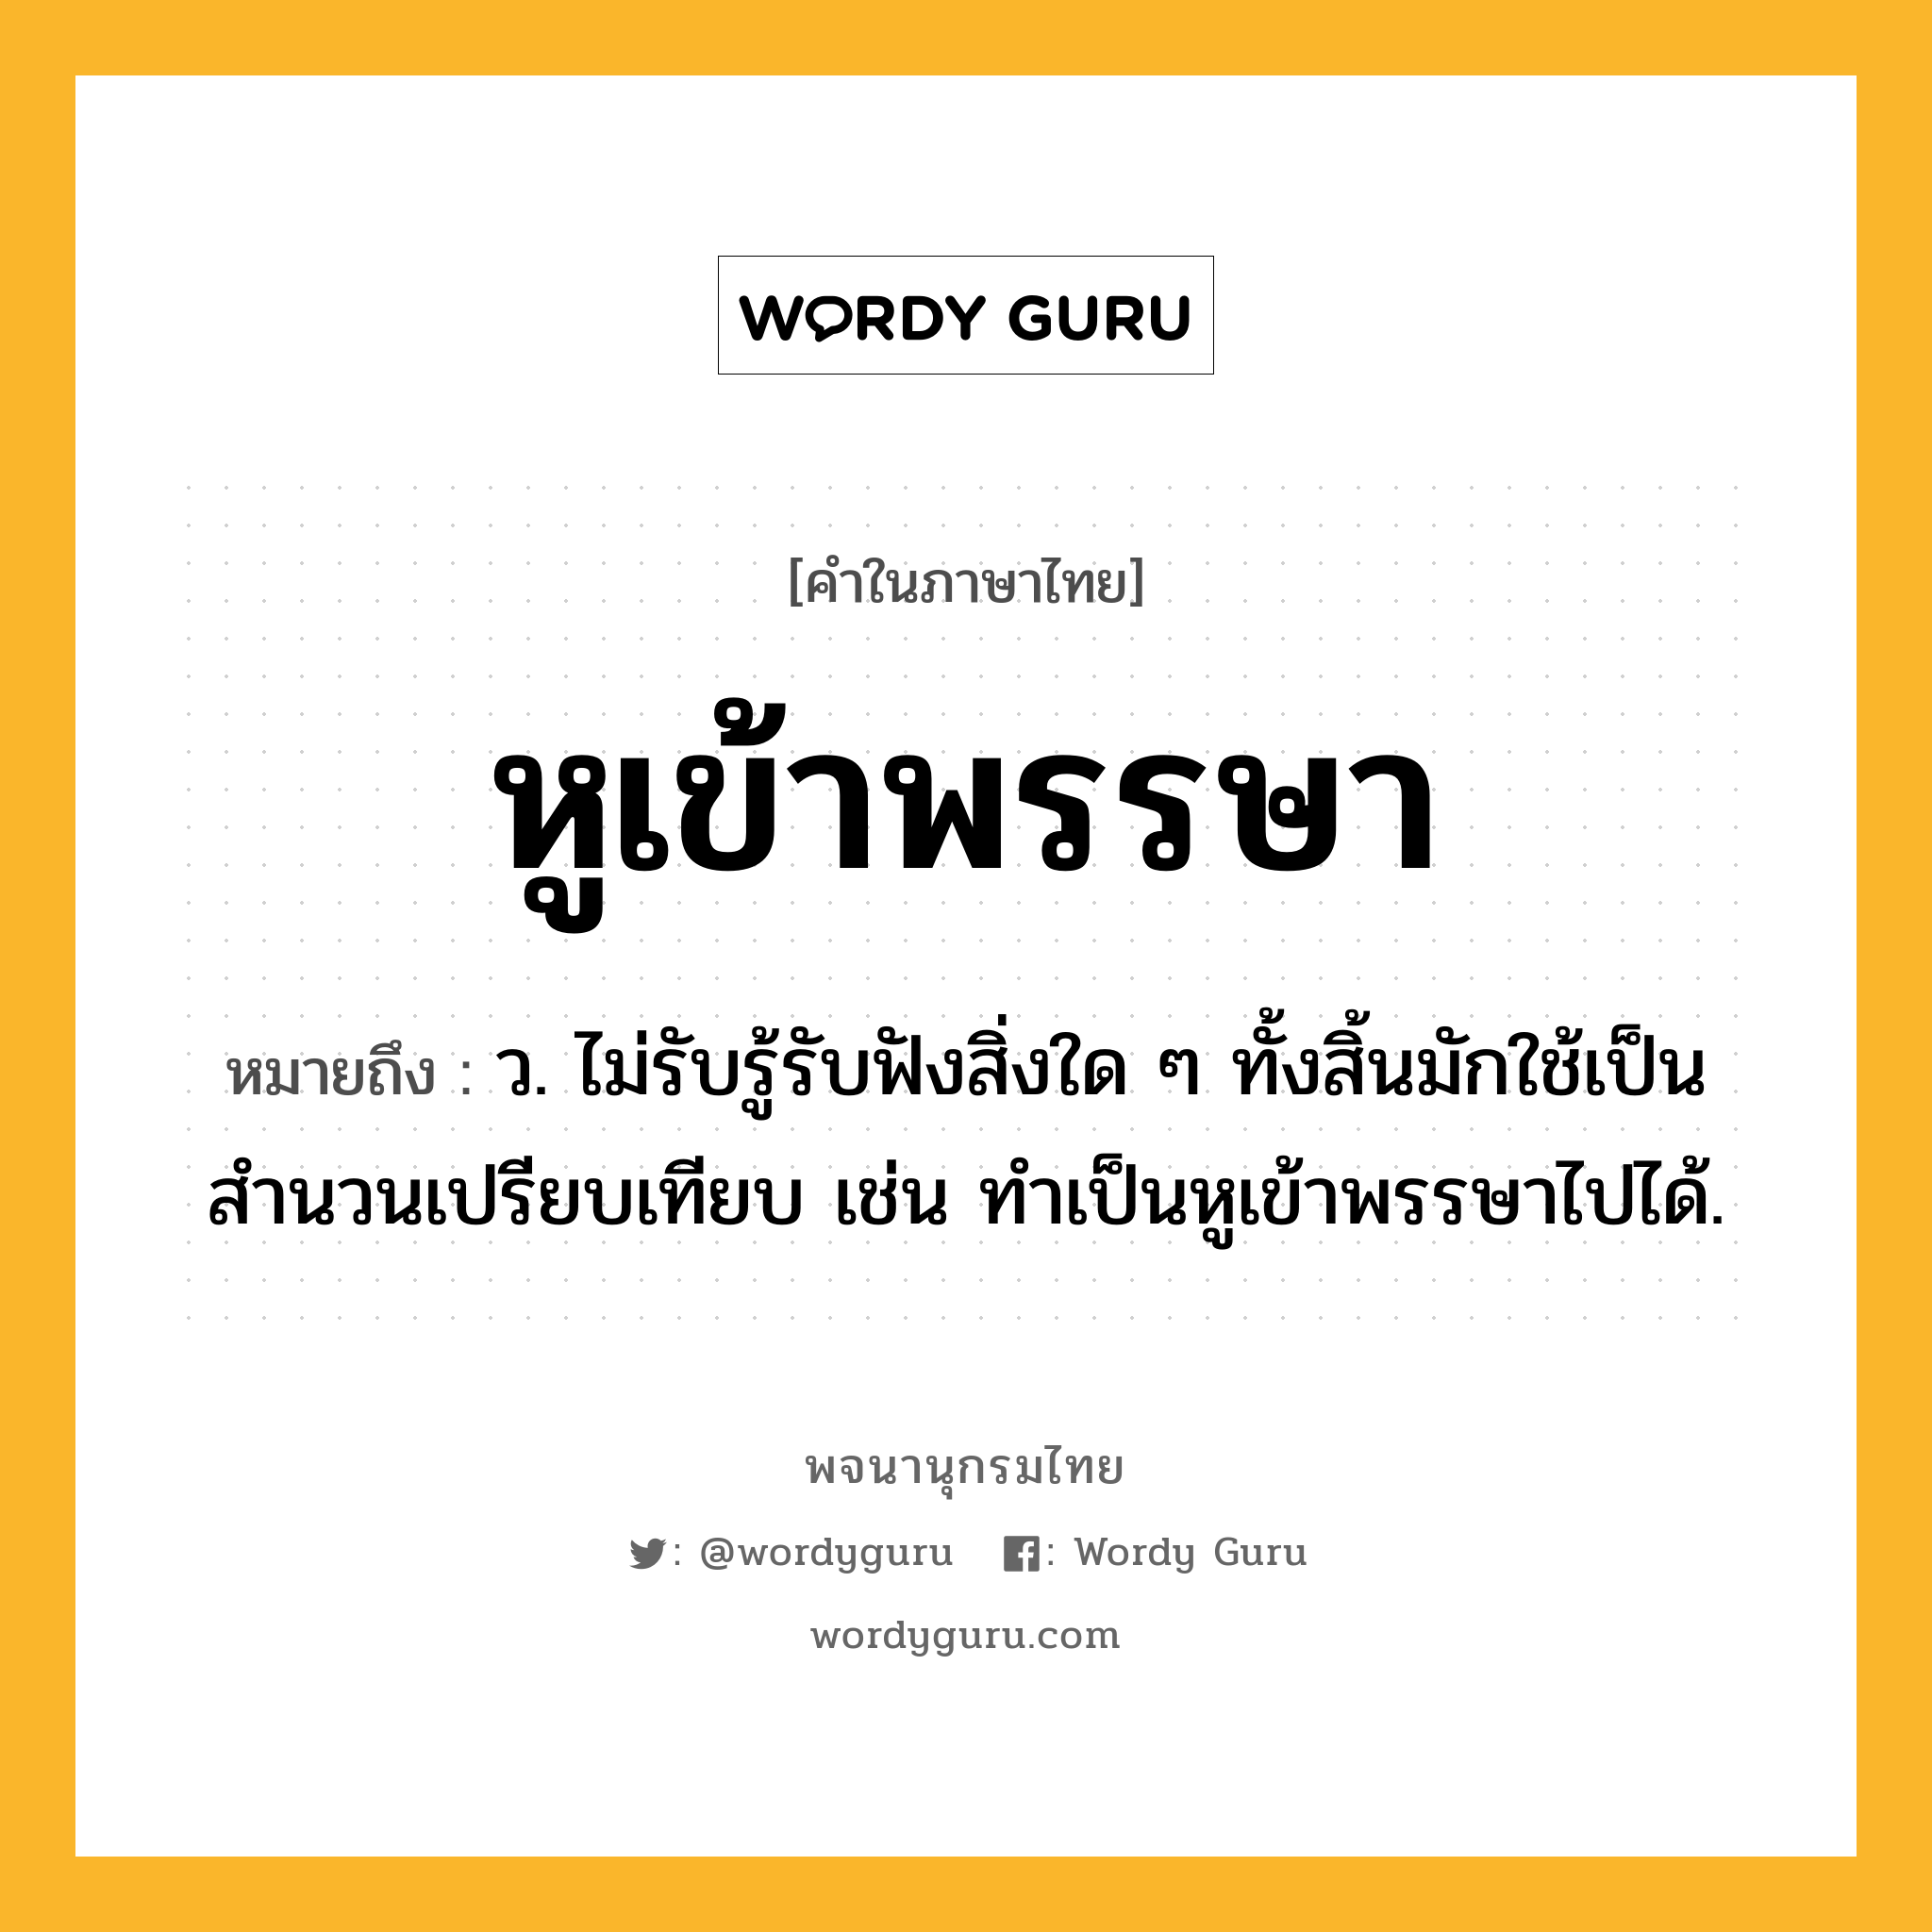 หูเข้าพรรษา หมายถึงอะไร?, คำในภาษาไทย หูเข้าพรรษา หมายถึง ว. ไม่รับรู้รับฟังสิ่งใด ๆ ทั้งสิ้นมักใช้เป็นสำนวนเปรียบเทียบ เช่น ทำเป็นหูเข้าพรรษาไปได้.